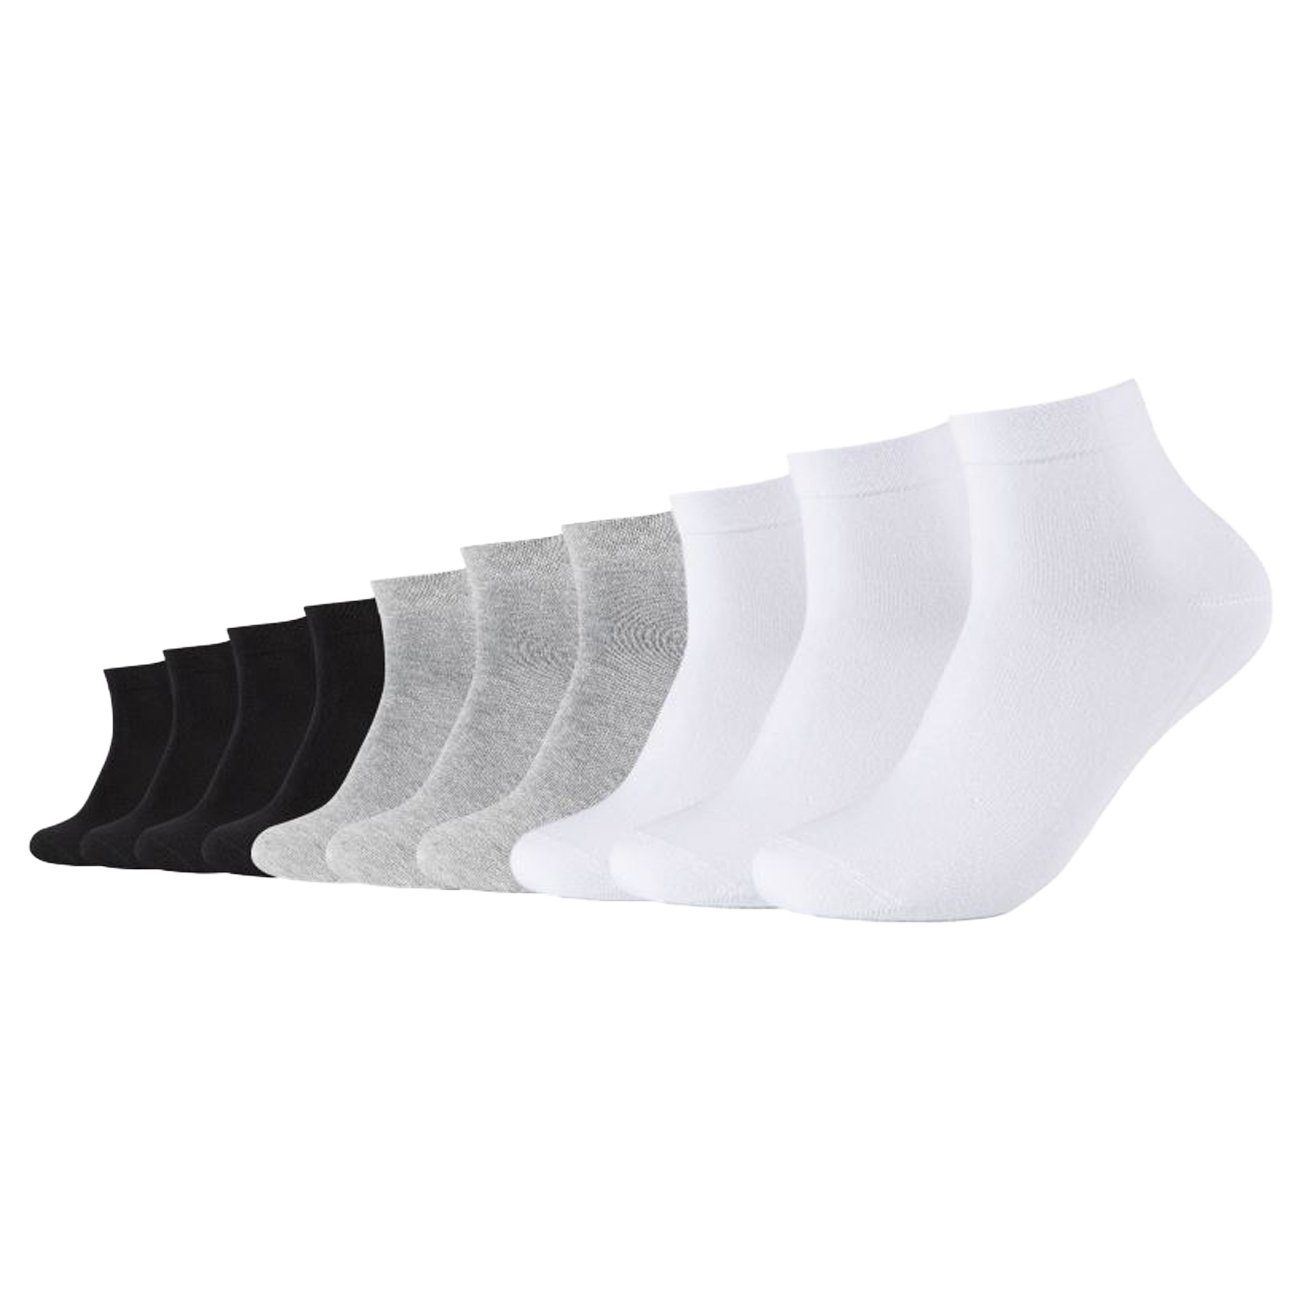 Camano Socken online kaufen | OTTO